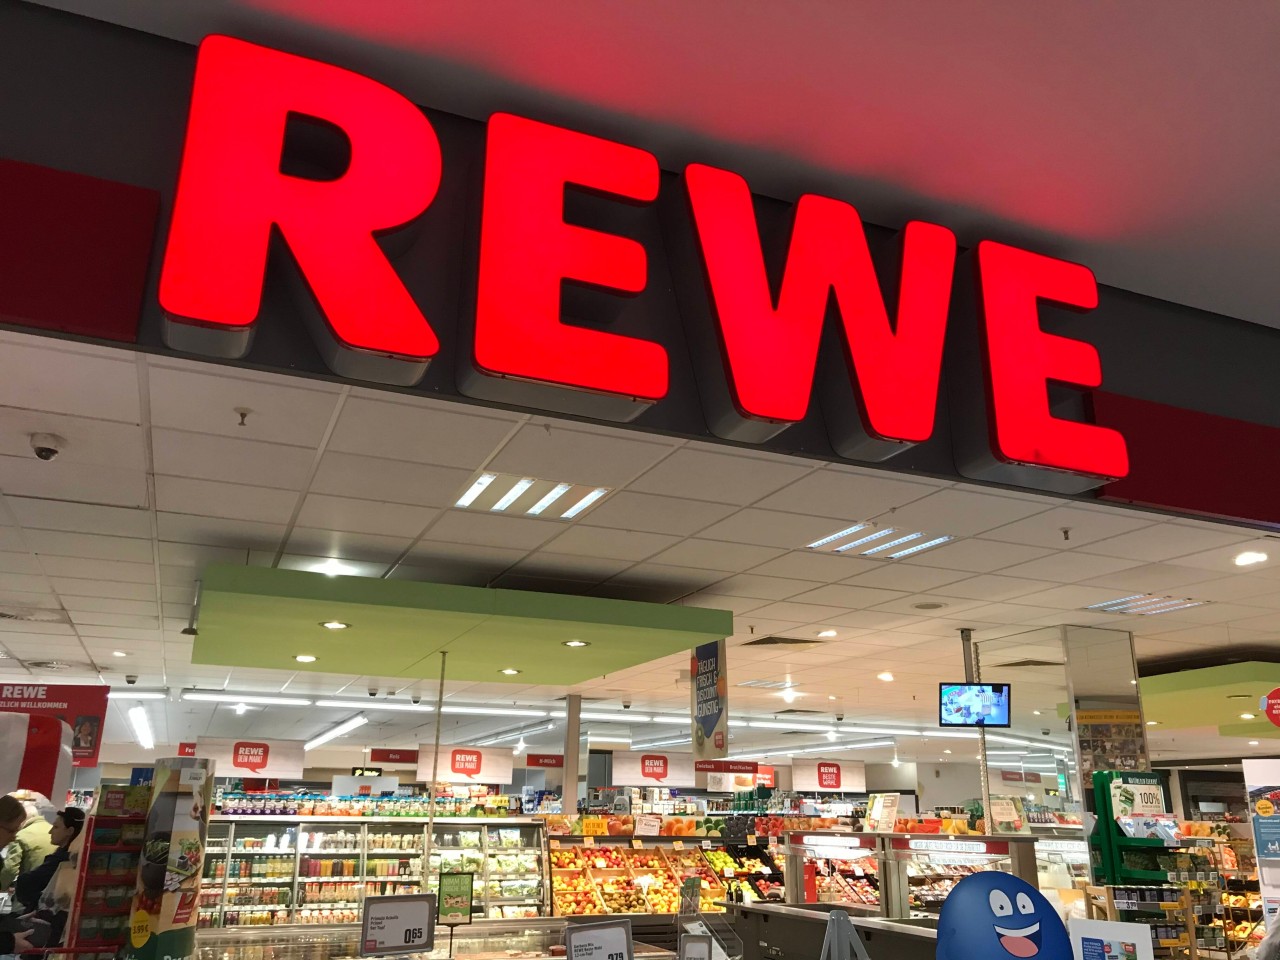 Rewe in NRW: Der Supermarkt macht auf ein ernsthaftes Problem aufmerksam. (Symbolbild)